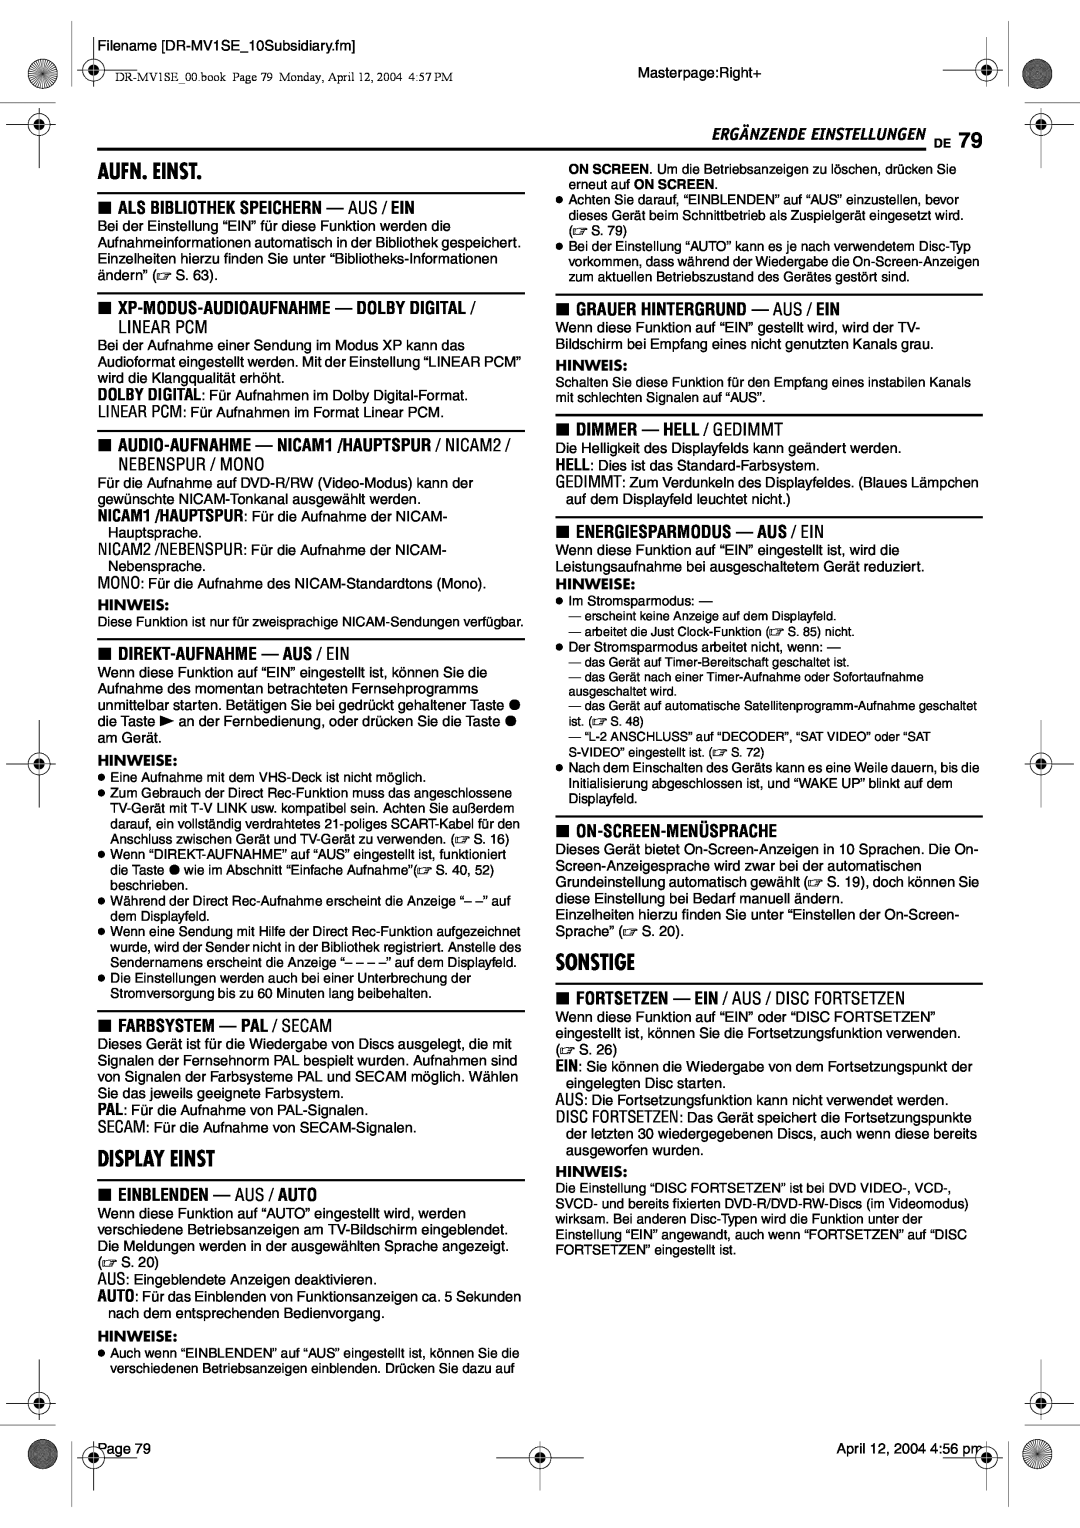 JVC DR-MV1S manual Aufn. Einst, Display Einst, Sonstige, Als Bibliothek Speichern - Aus / Ein, Linear Pcm, Nebenspur / Mono 